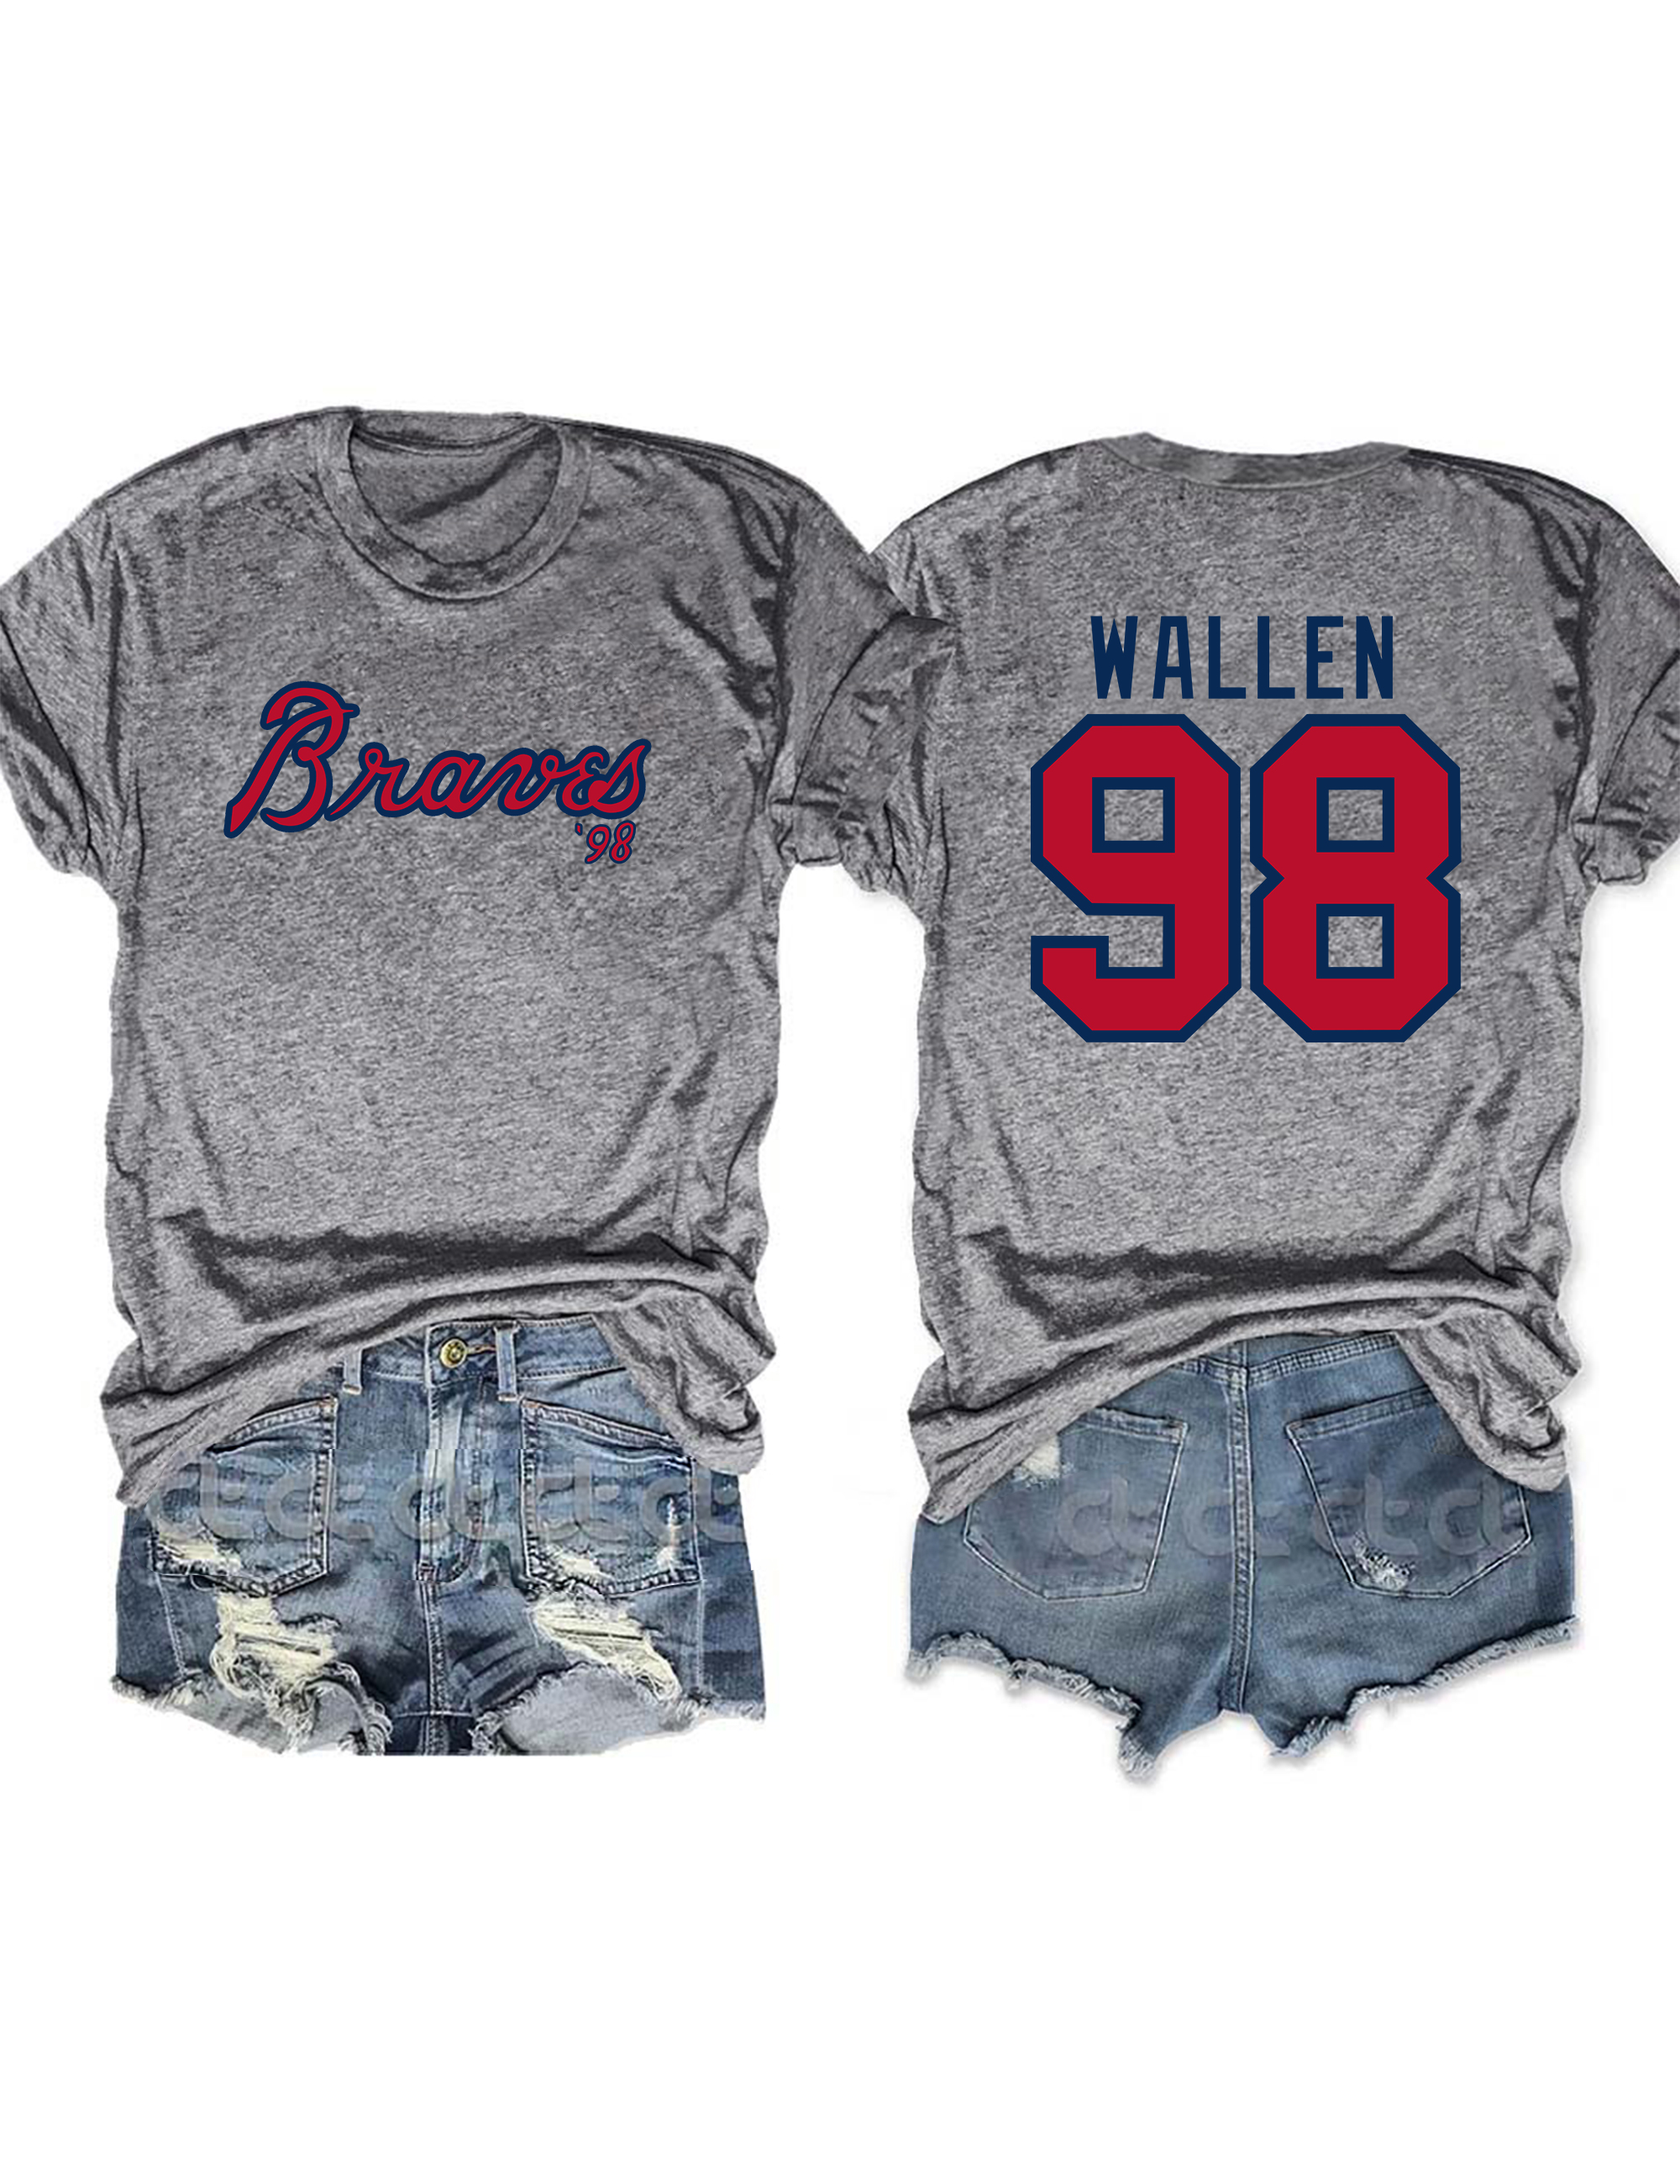 98 Braves Morgan Wallen T-Shirt For Women